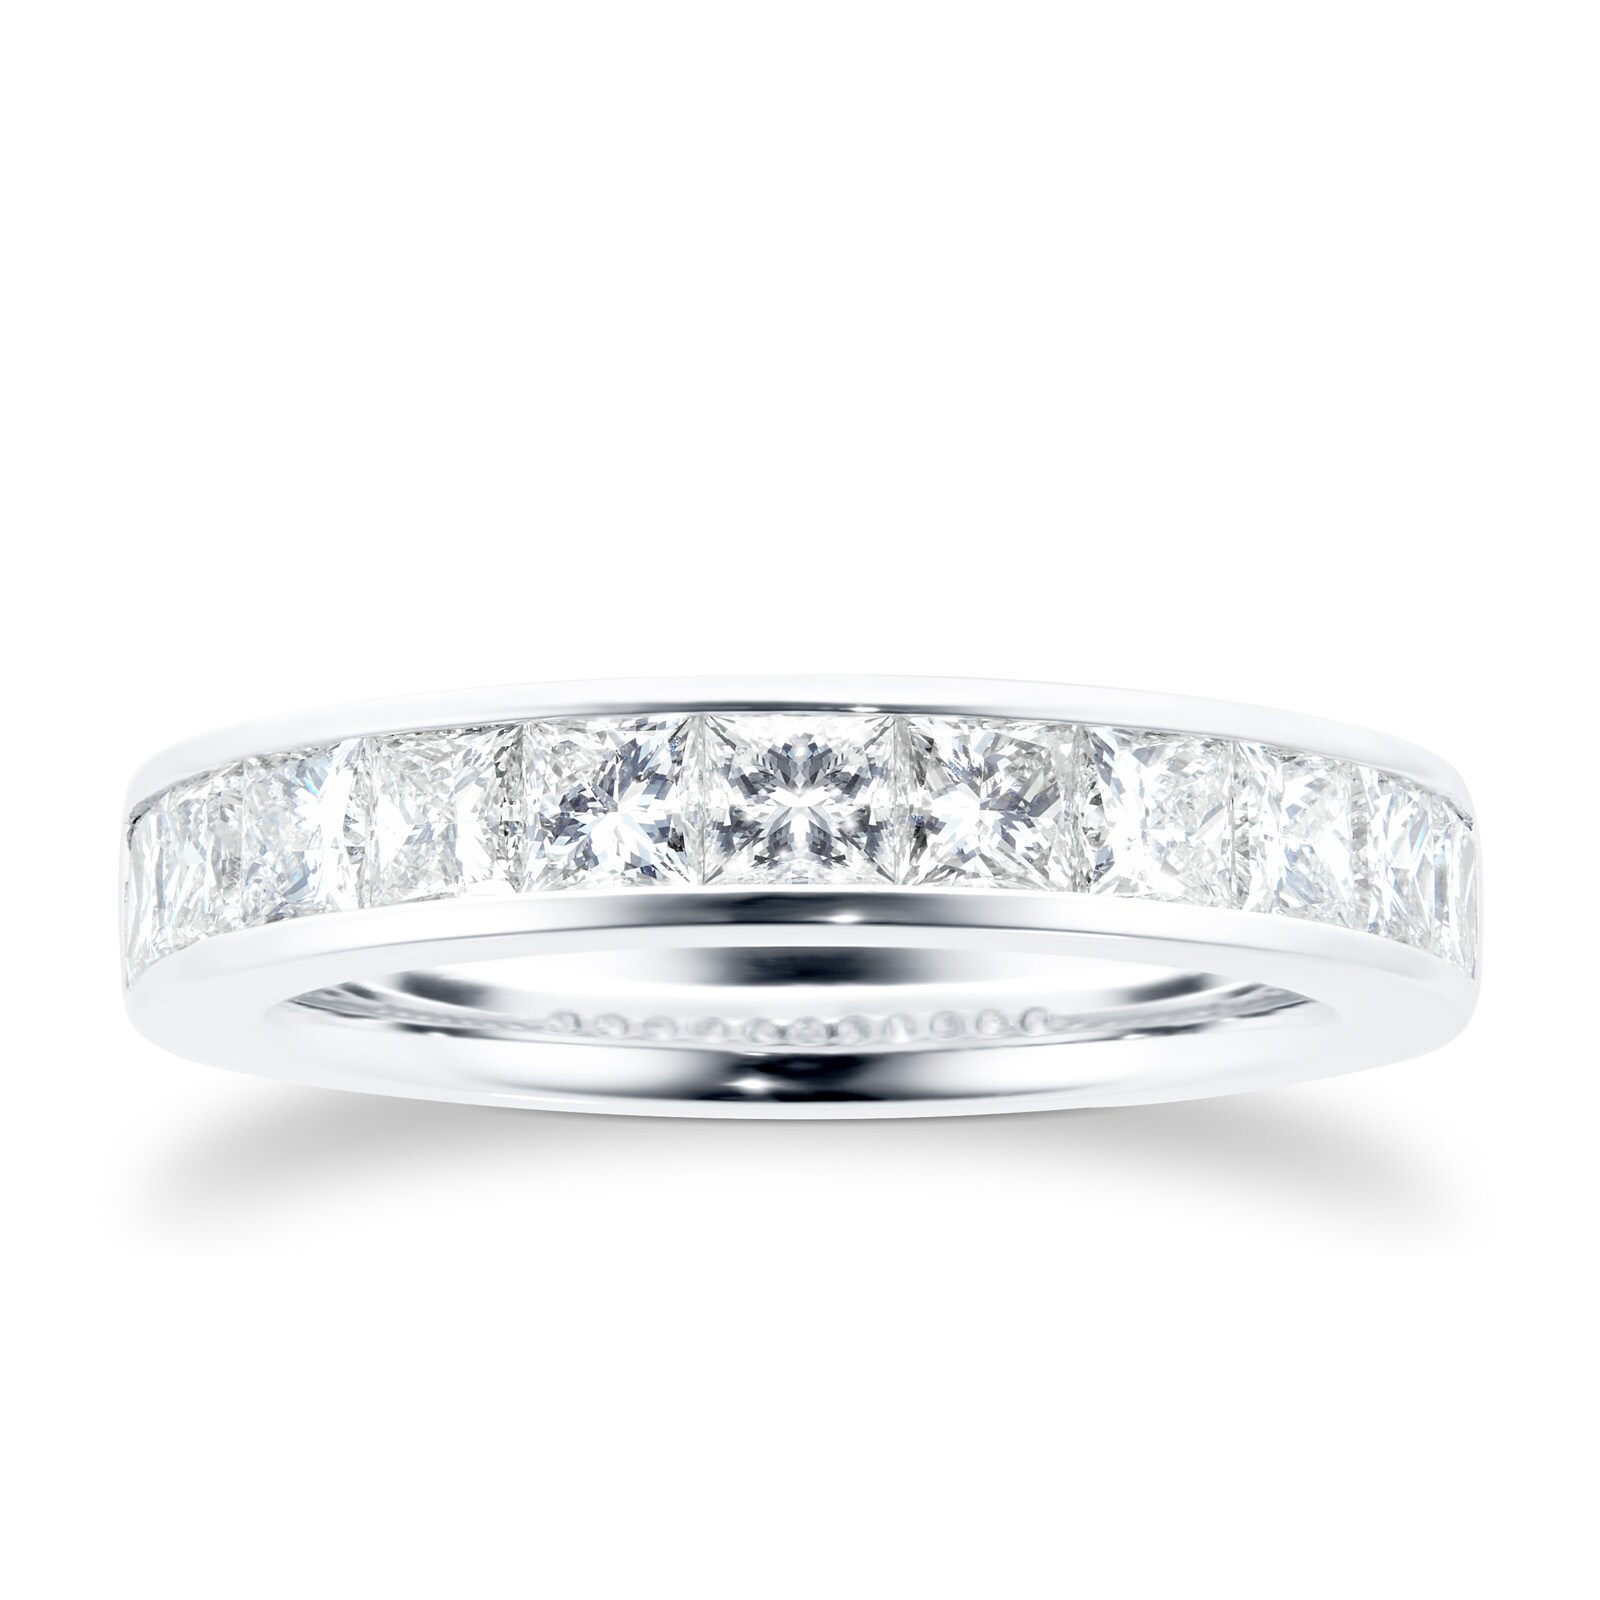 18 Carat White Gold 1.50 Carat Princess Cut Half Eternity Ring - Ring Size J